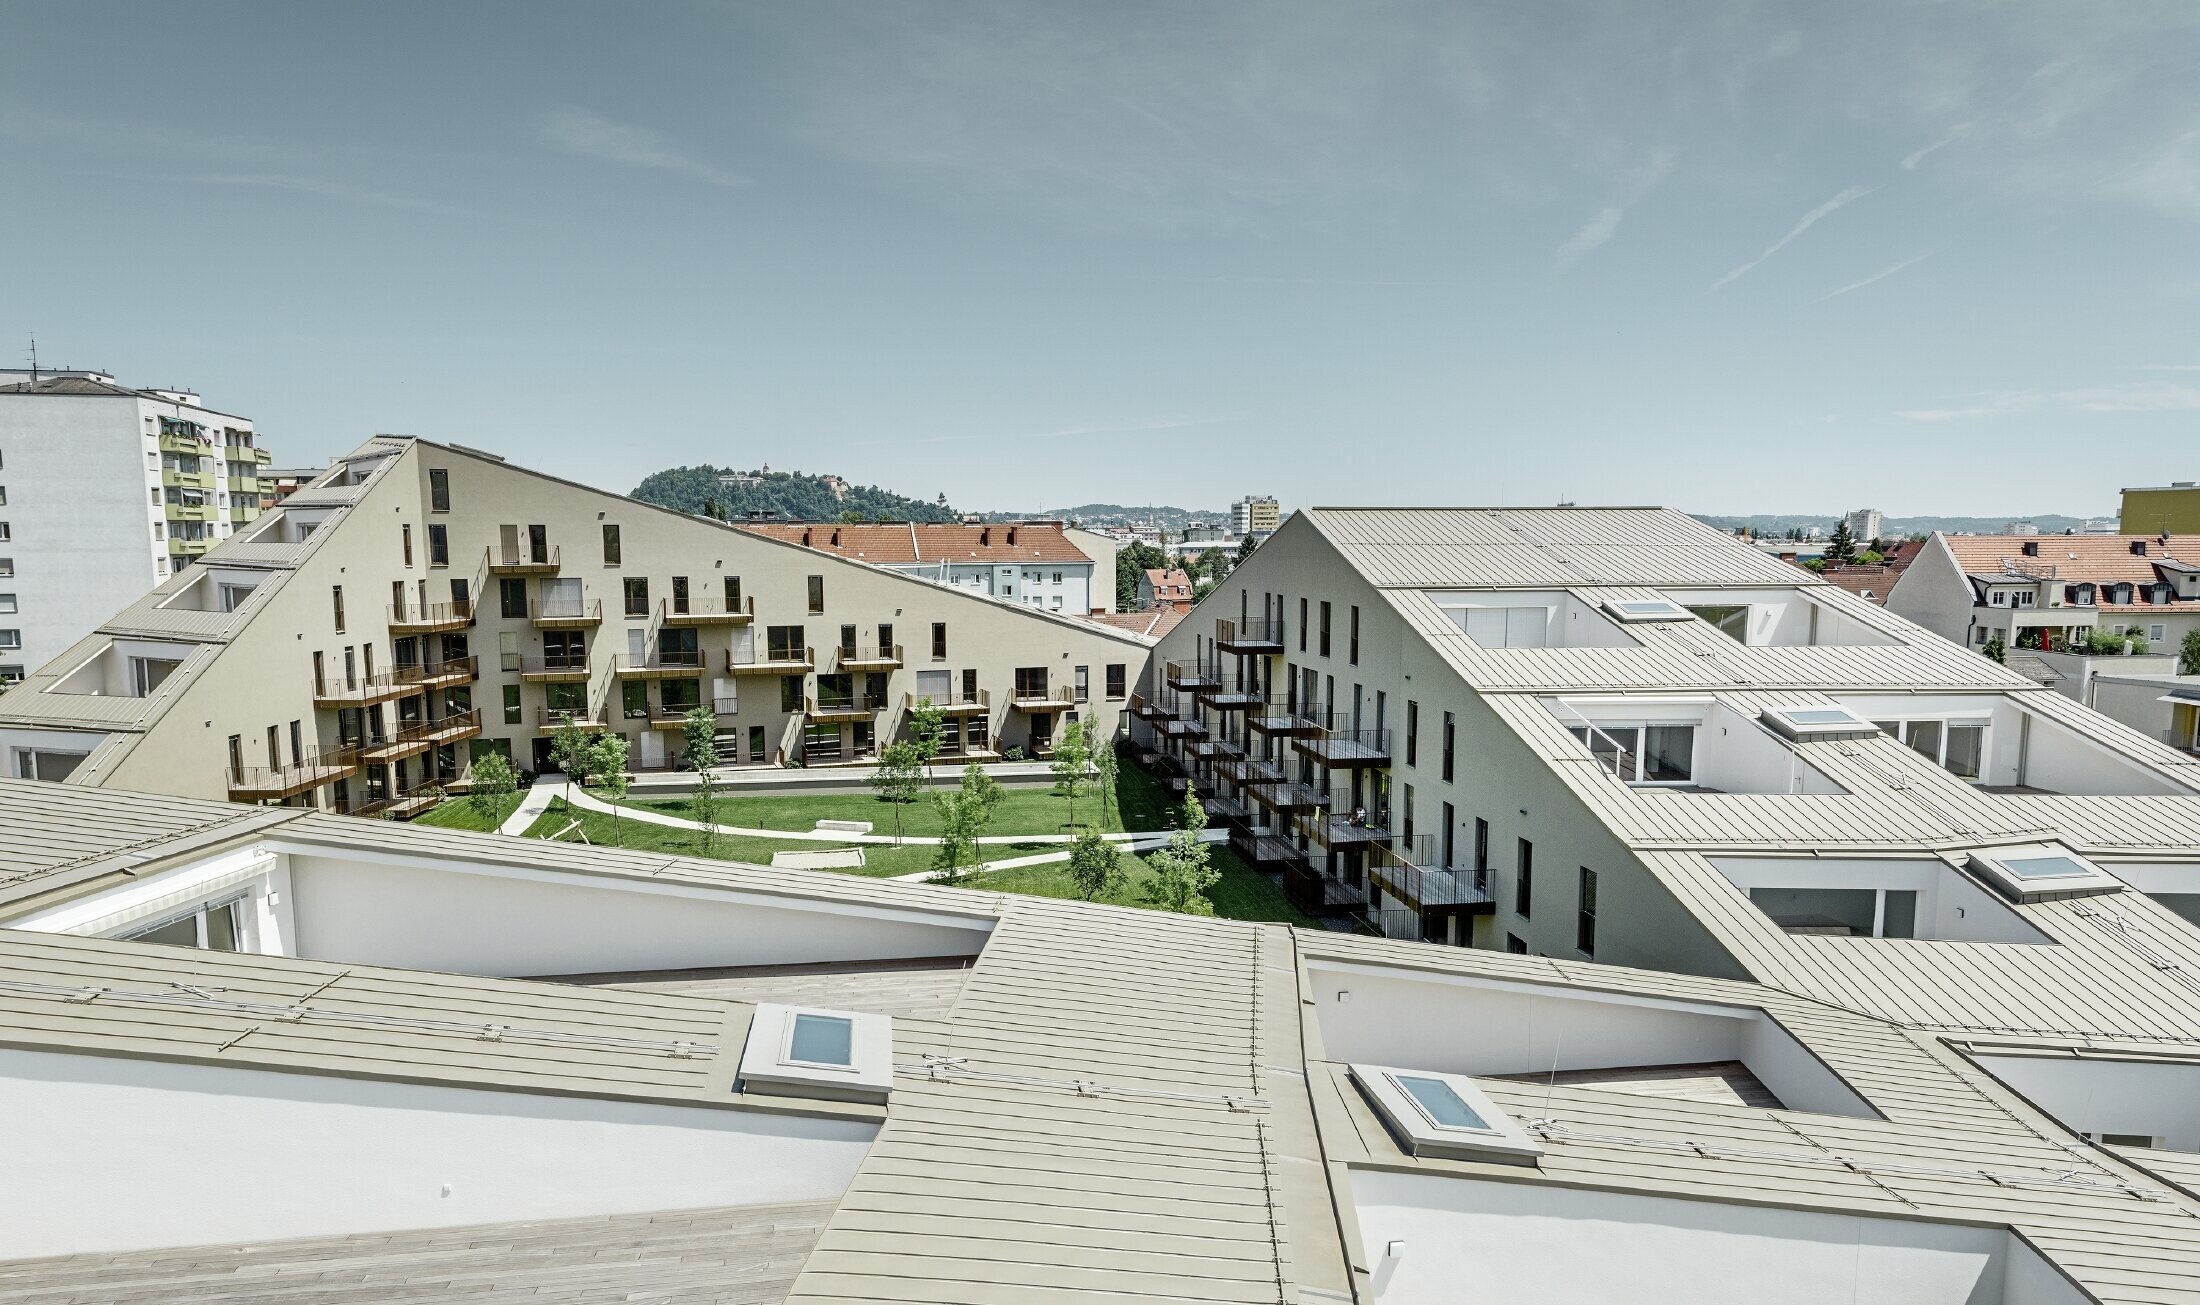 Izduženo stambeno naselje u Grazu s krovnim površinama blagog nagiba, s integriranim terasama i velikoplošnim prozorima i s krovnim pokrovom iz Prefalza u specijalnoj boji bronce metalik